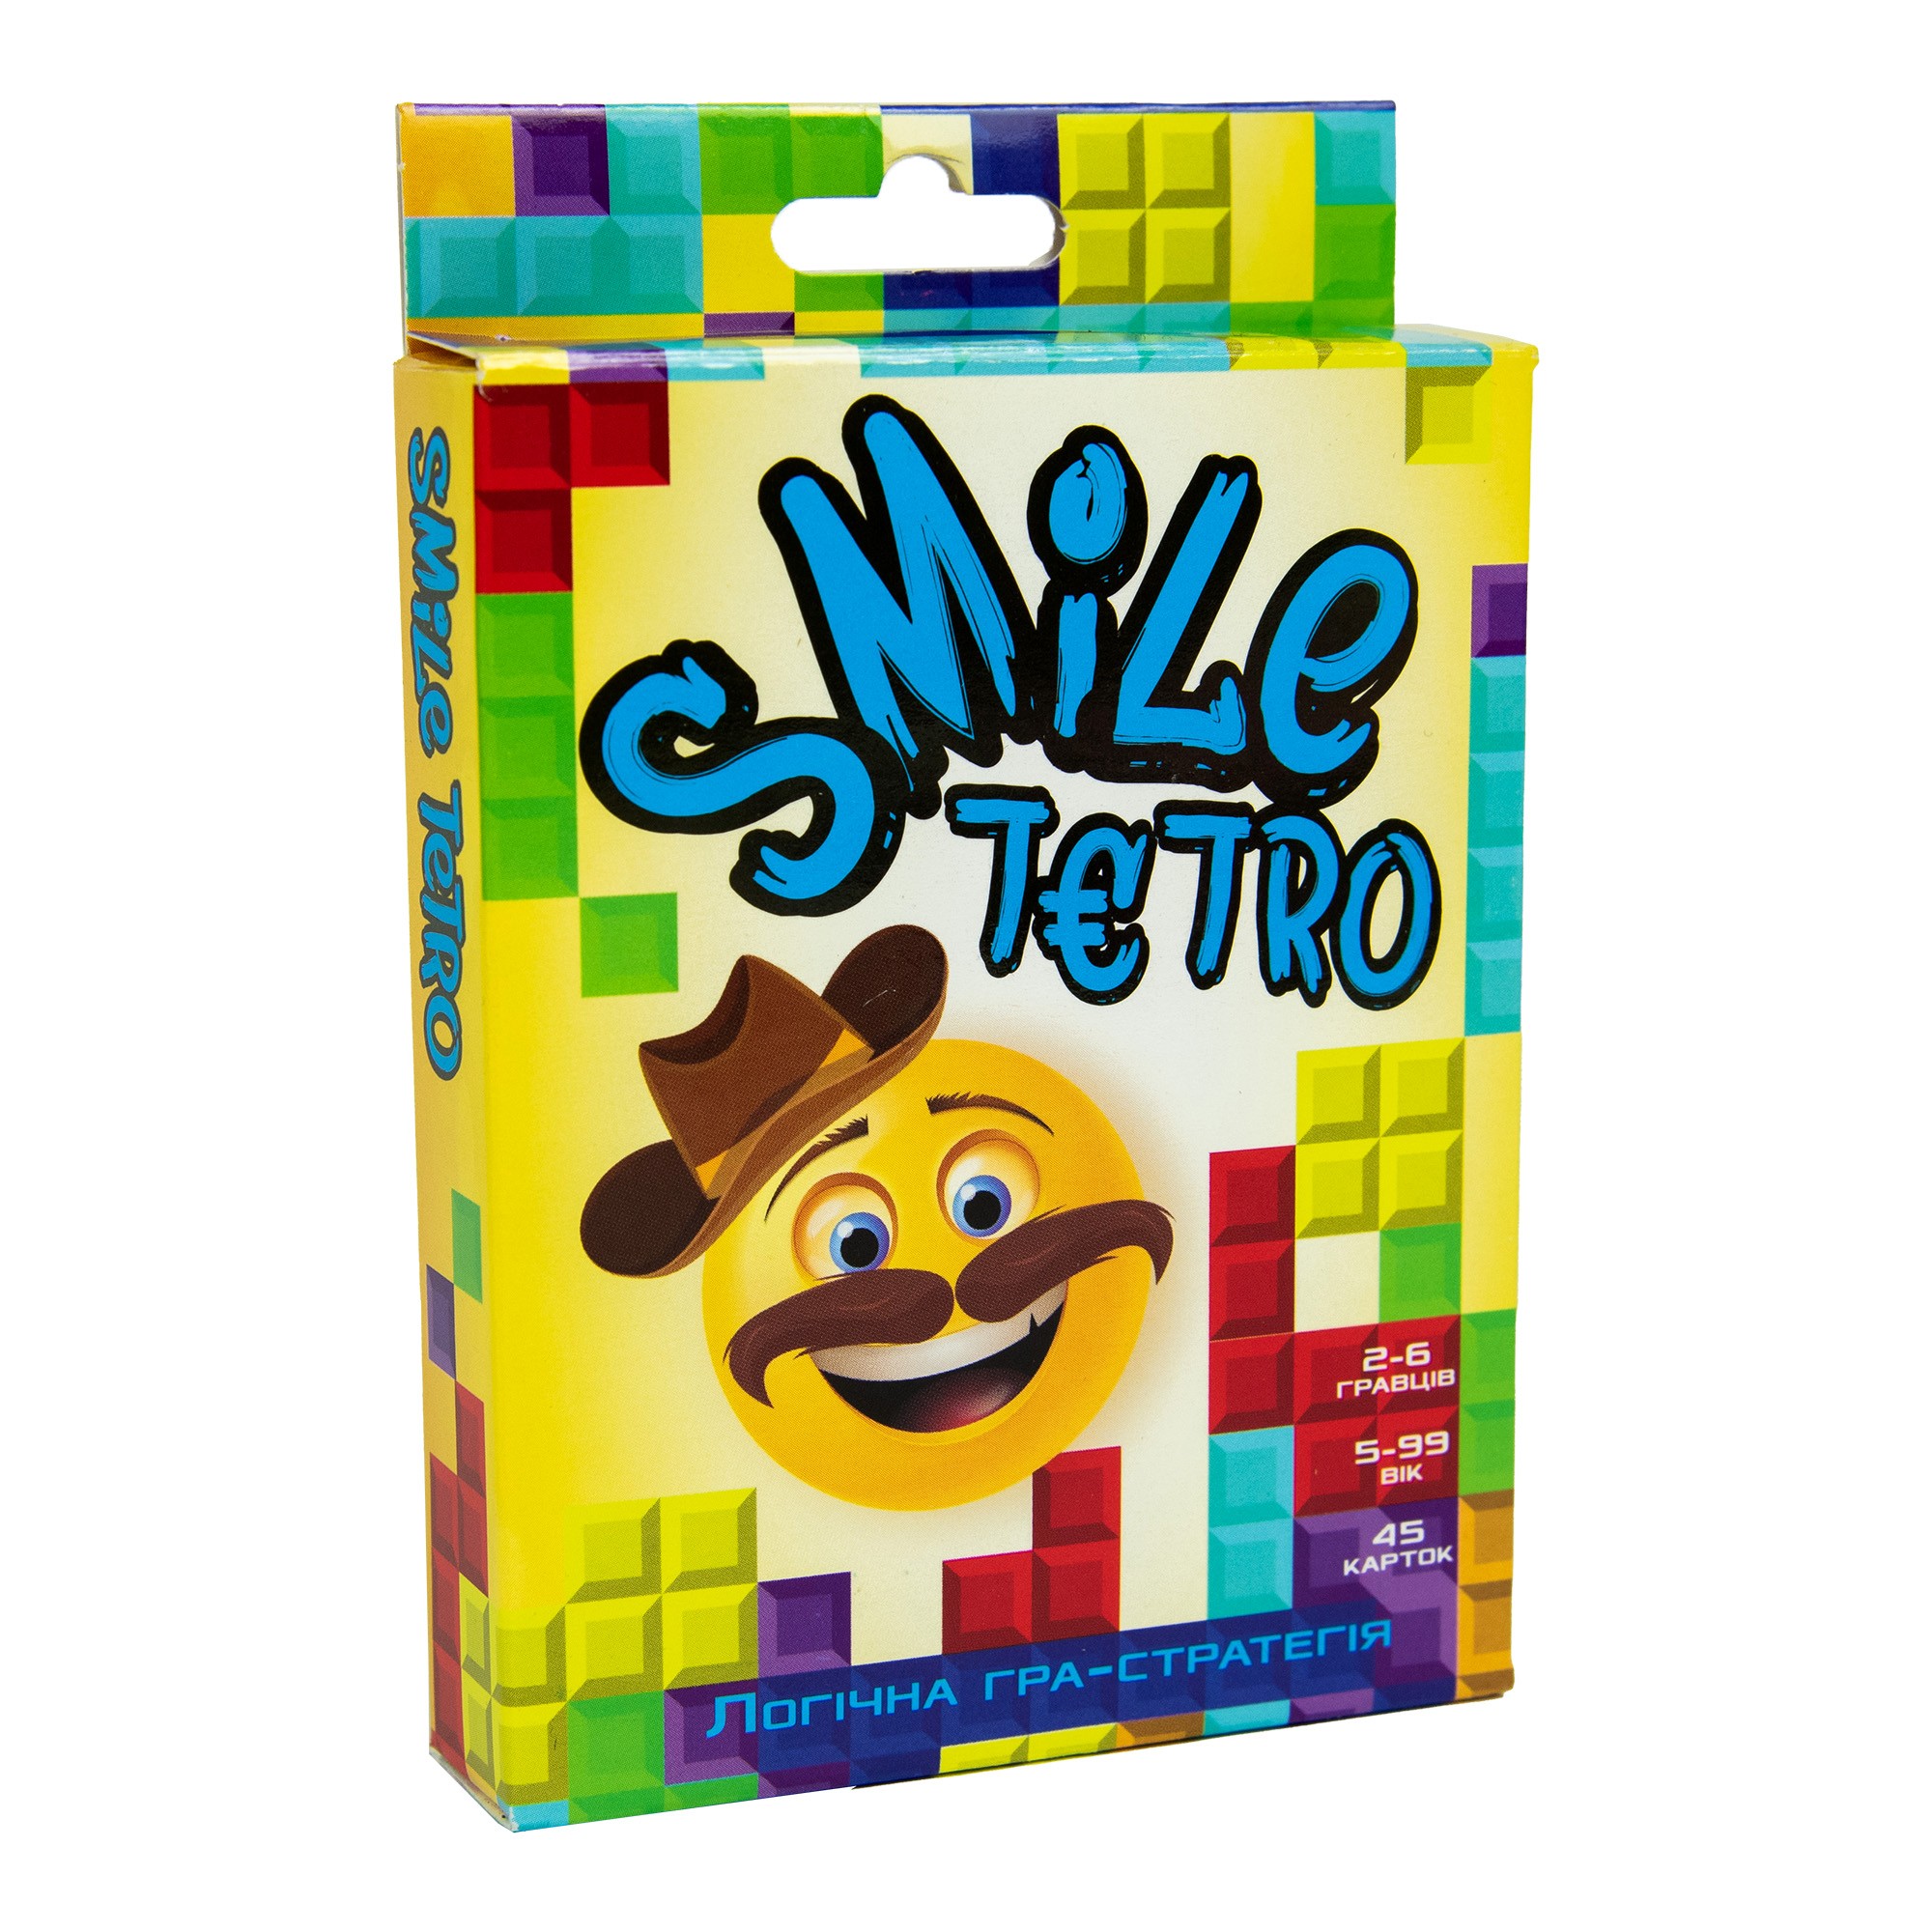 Настольная игра Смайл Тетро (Smile tetro), бренду Strateg, для 2-6 гравців, час гри < 30мин. - KUBIX